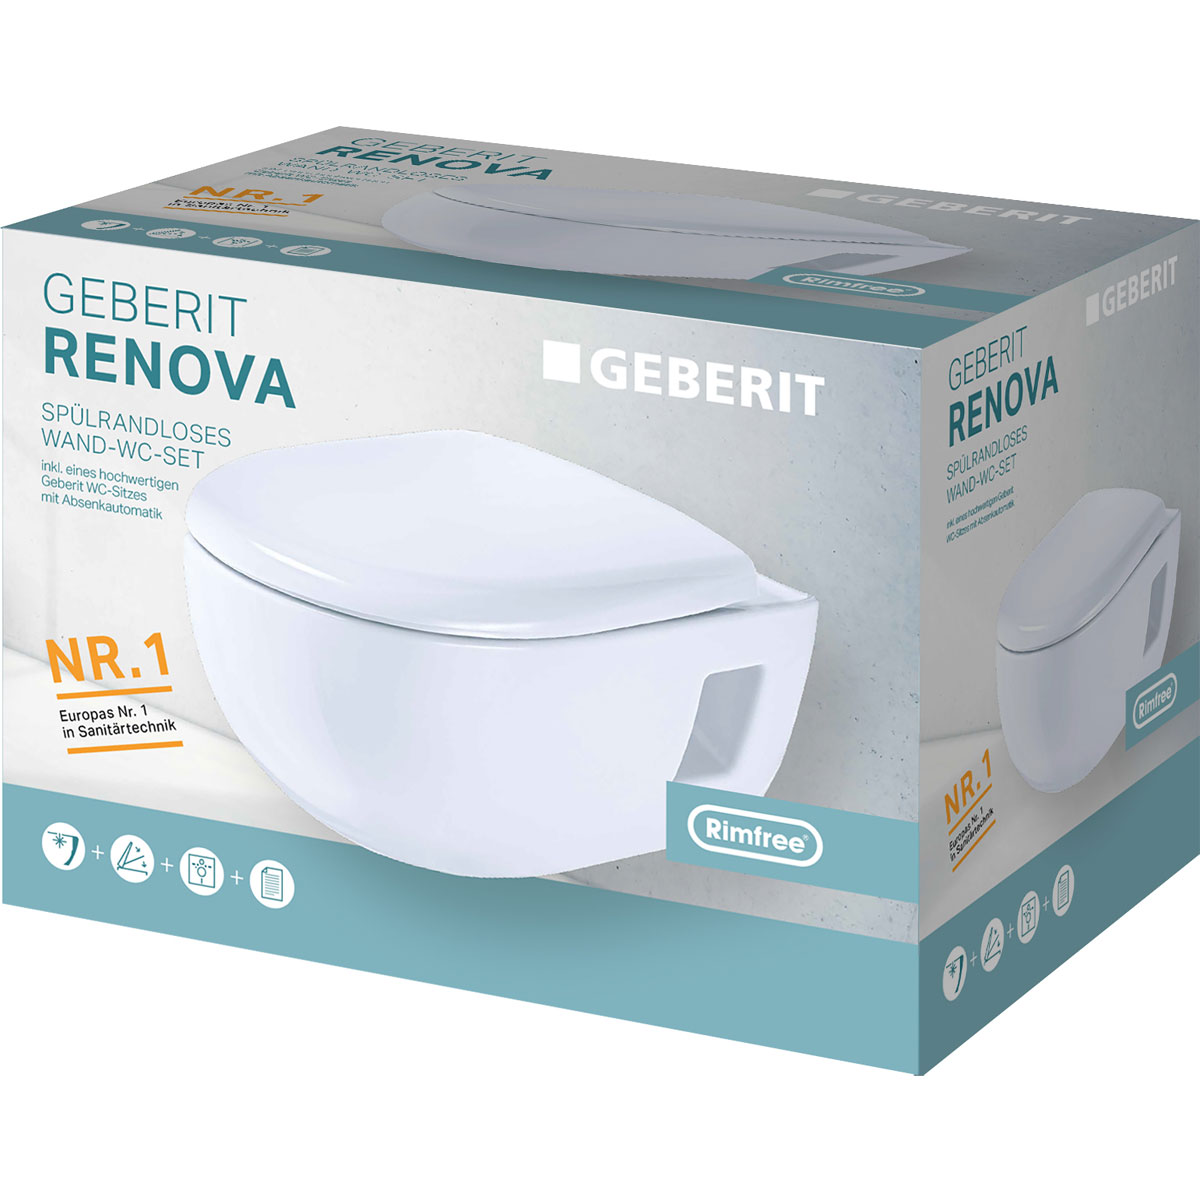 spülrandlos 273139 Premium | Renova Geberit inkl Wand-WC WC-Sitz Tiefspül